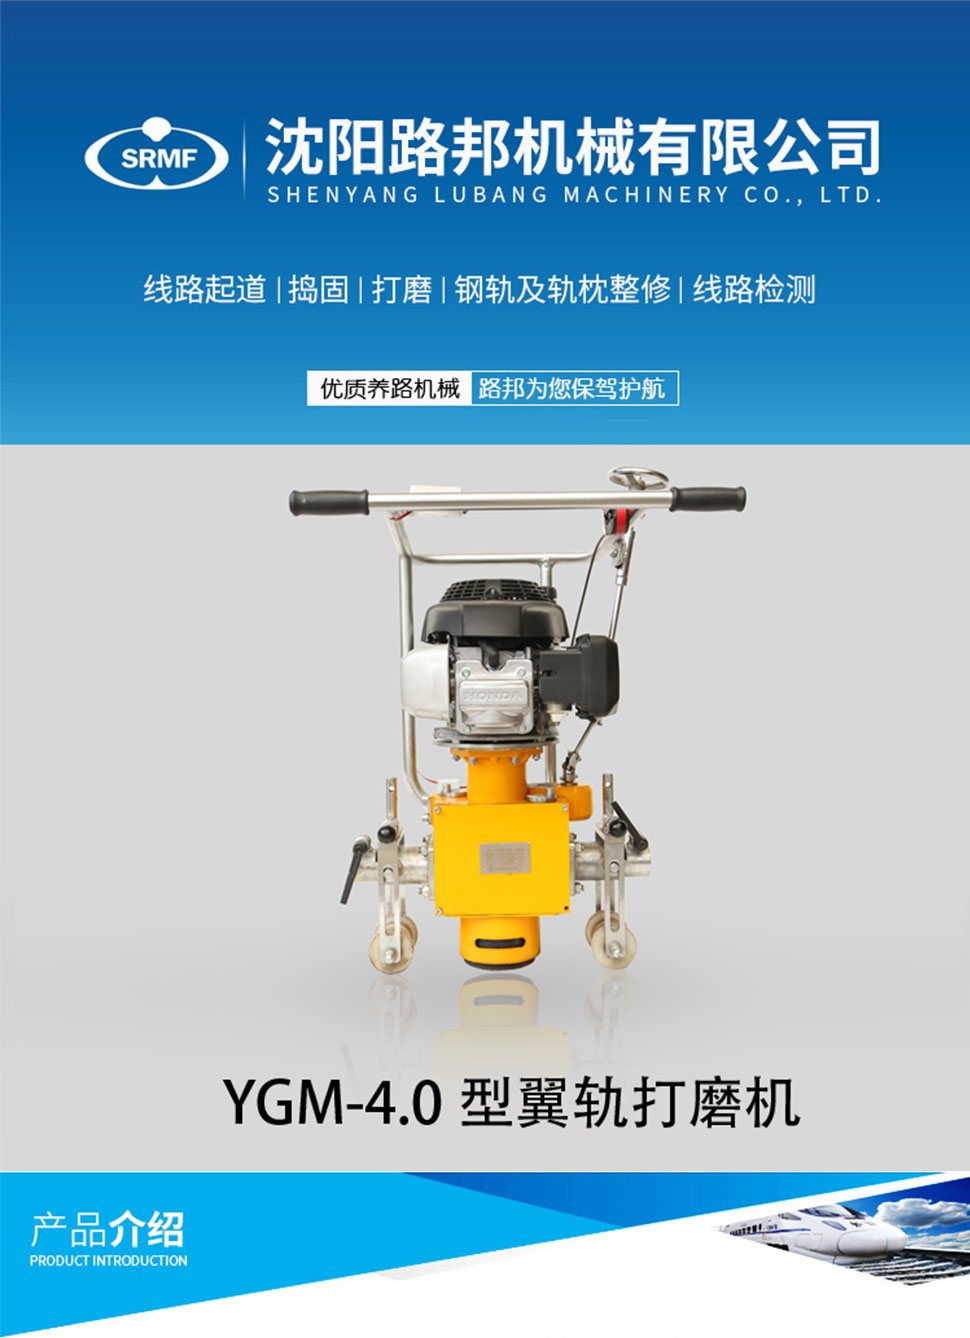 YGM-4.0型翼轨打磨机